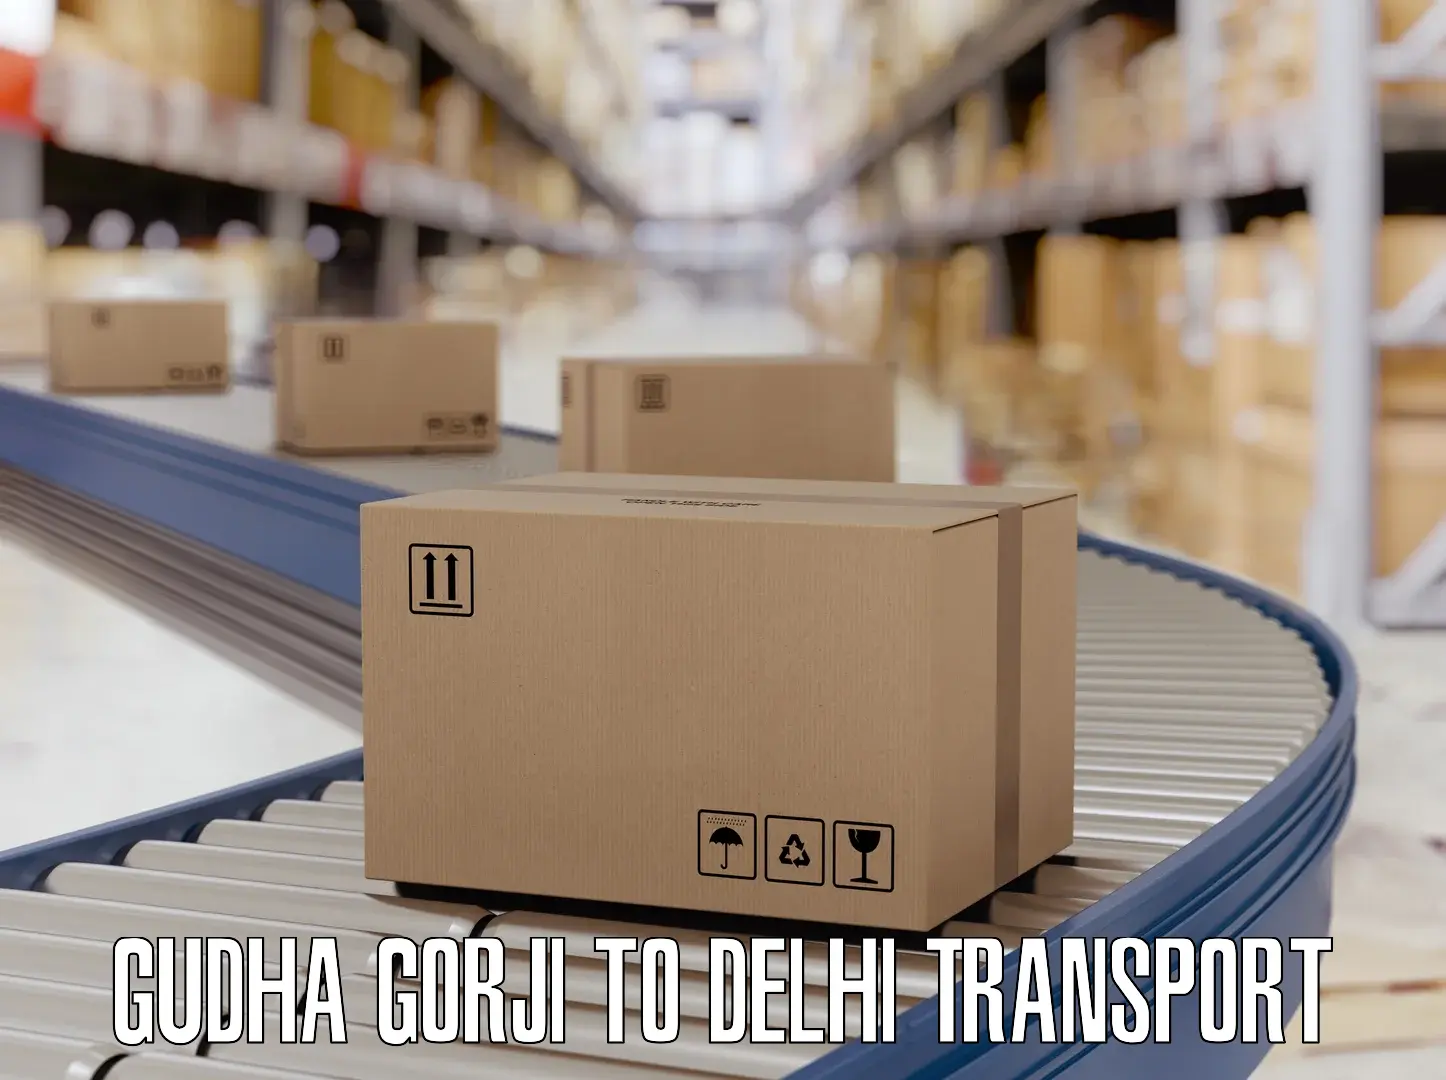 Daily parcel service transport Gudha Gorji to Kalkaji